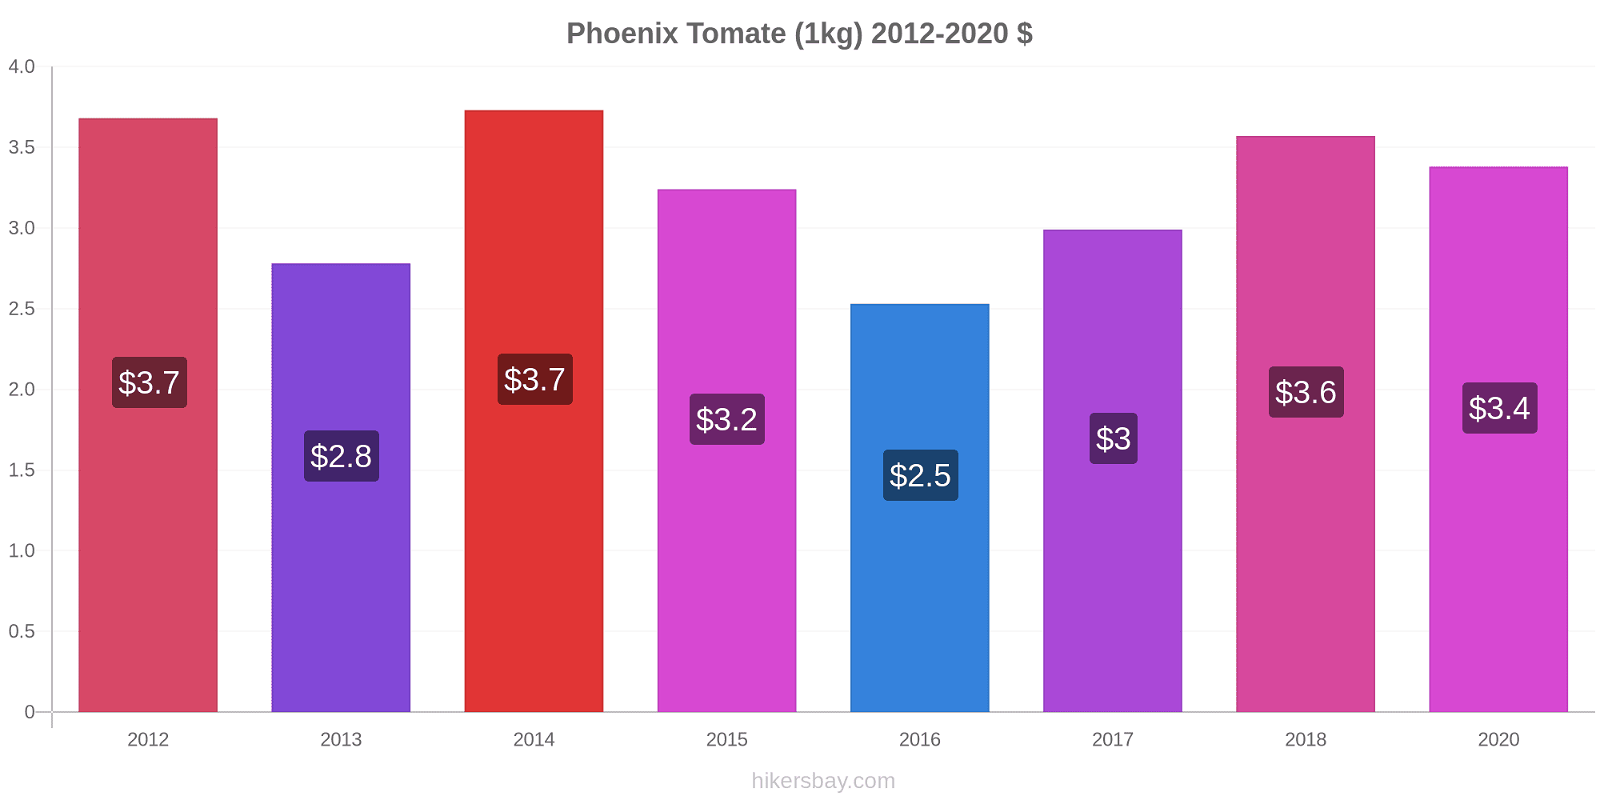 Phoenix changements de prix Tomate (1kg) hikersbay.com